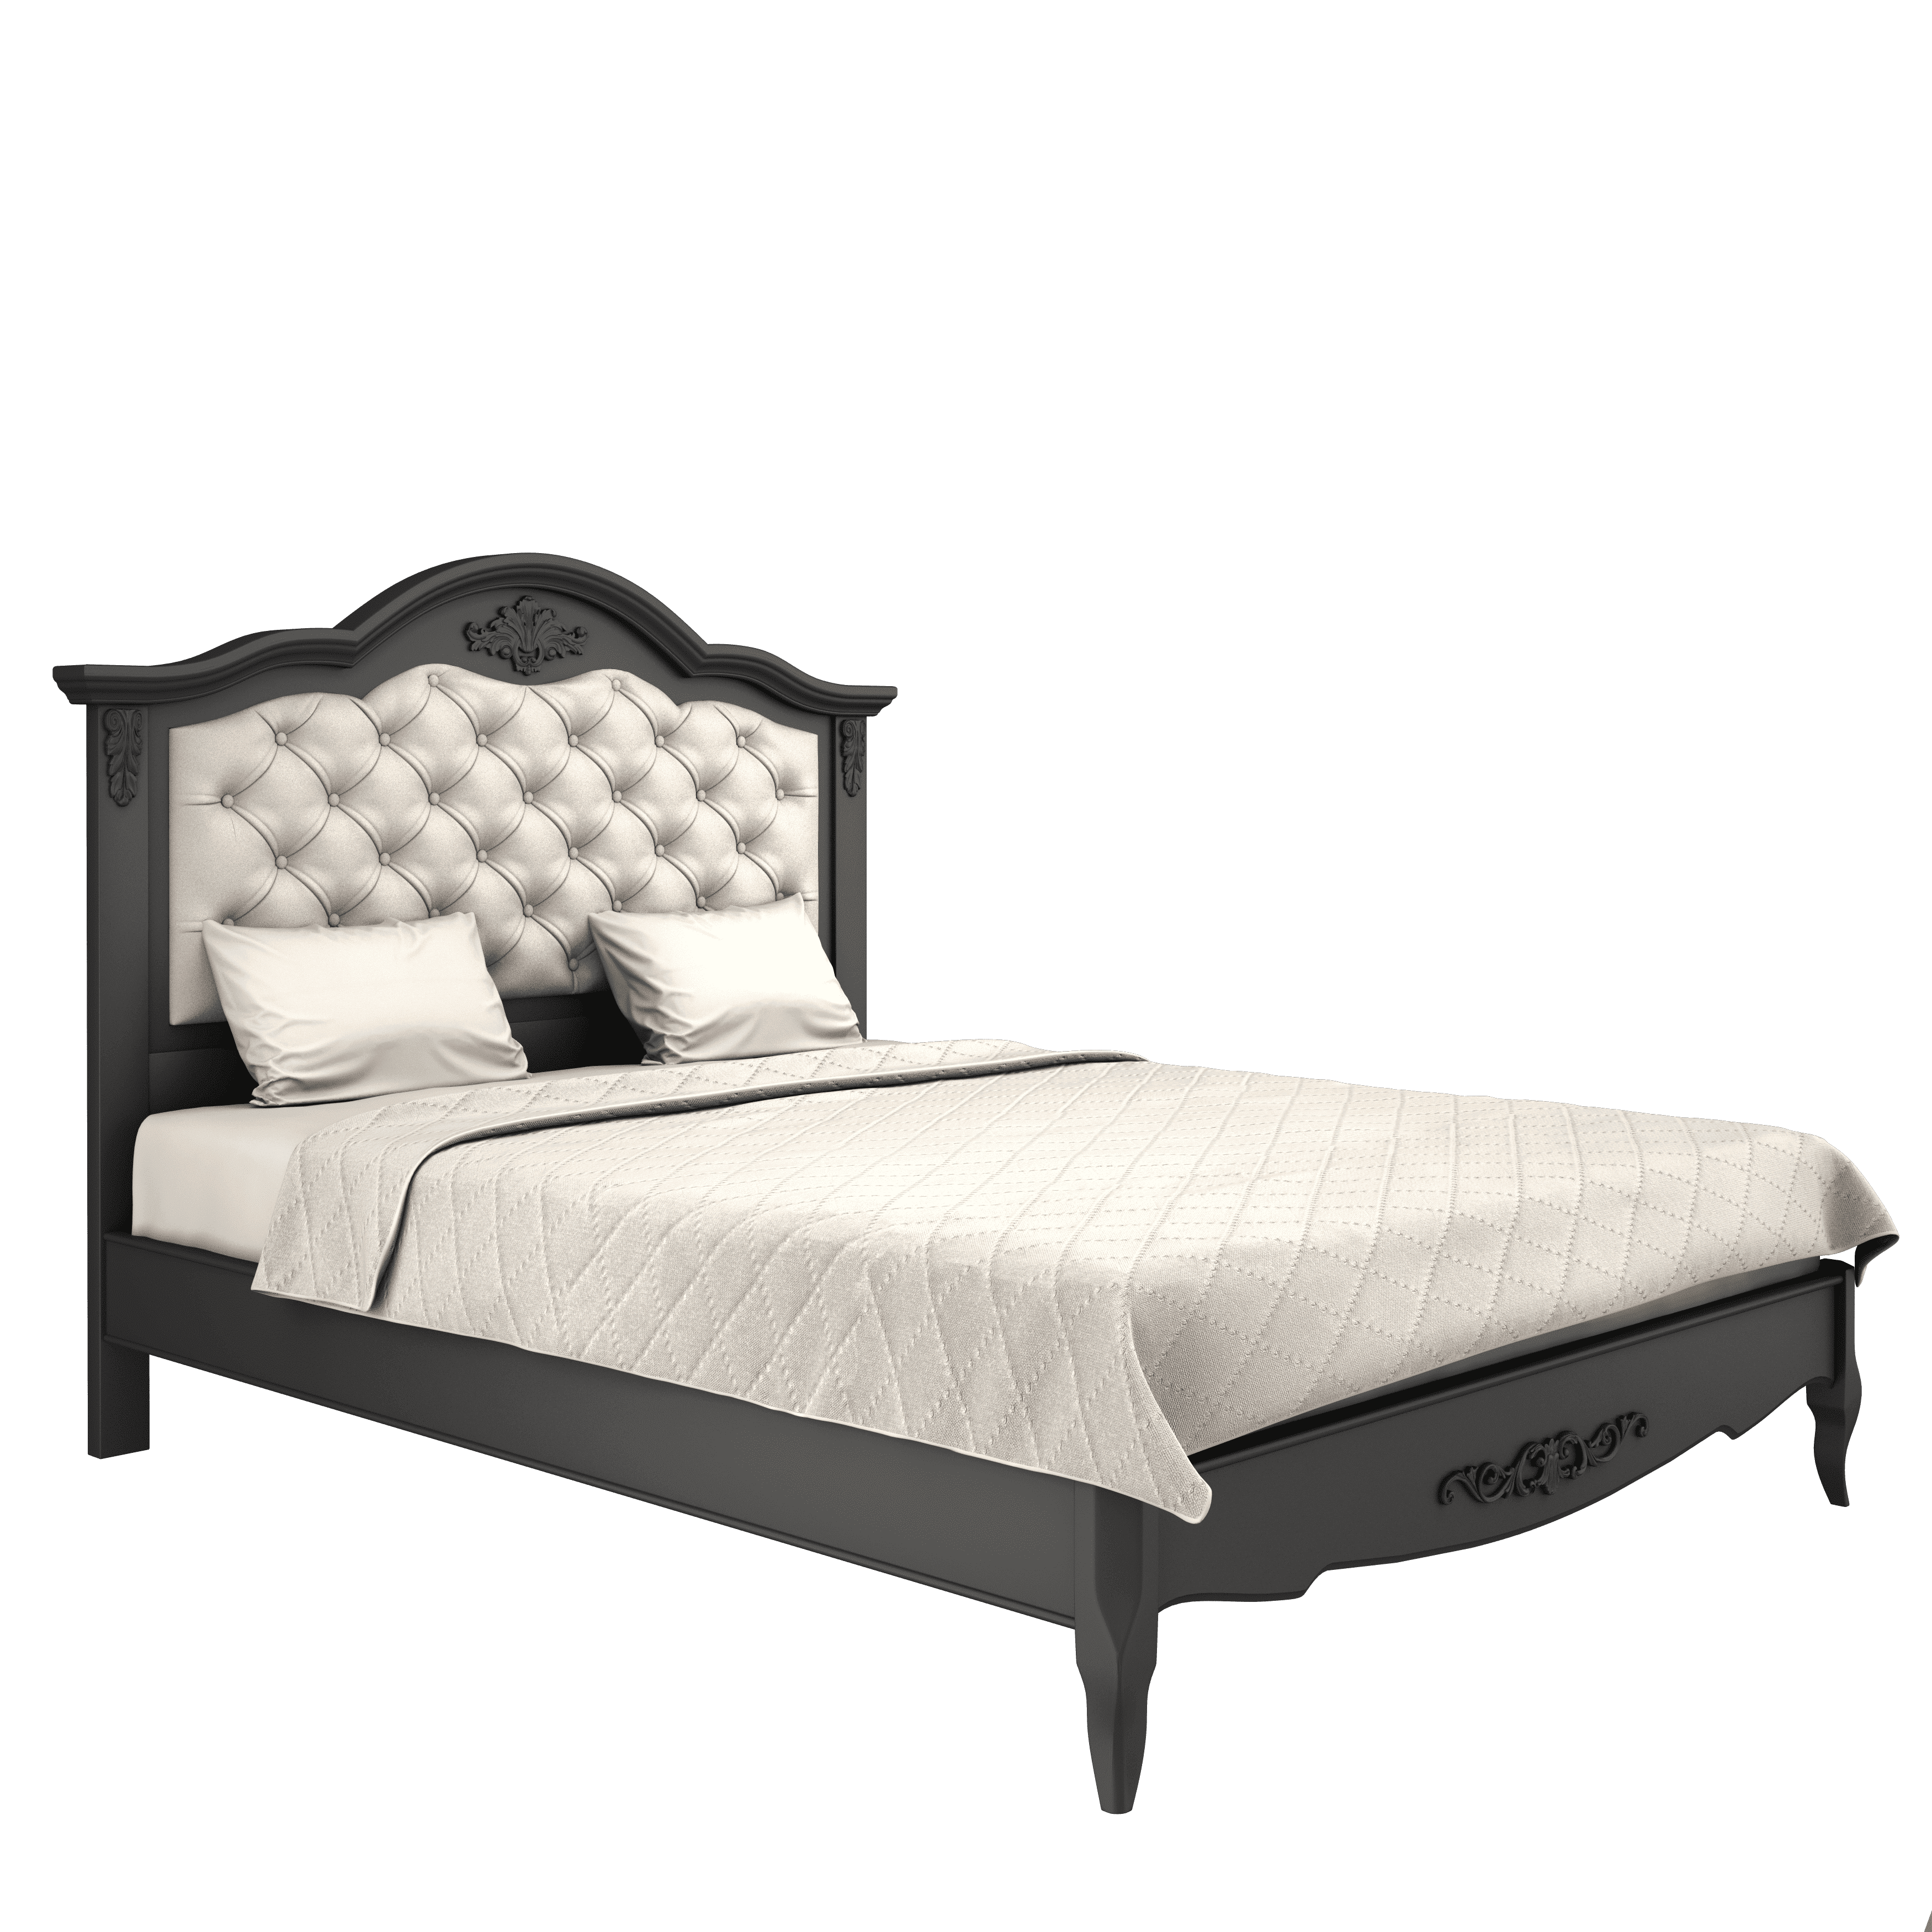 Кровать Aletan Provence, односпальная, 120x200 см, цвет: черный (B212BL)B212BL